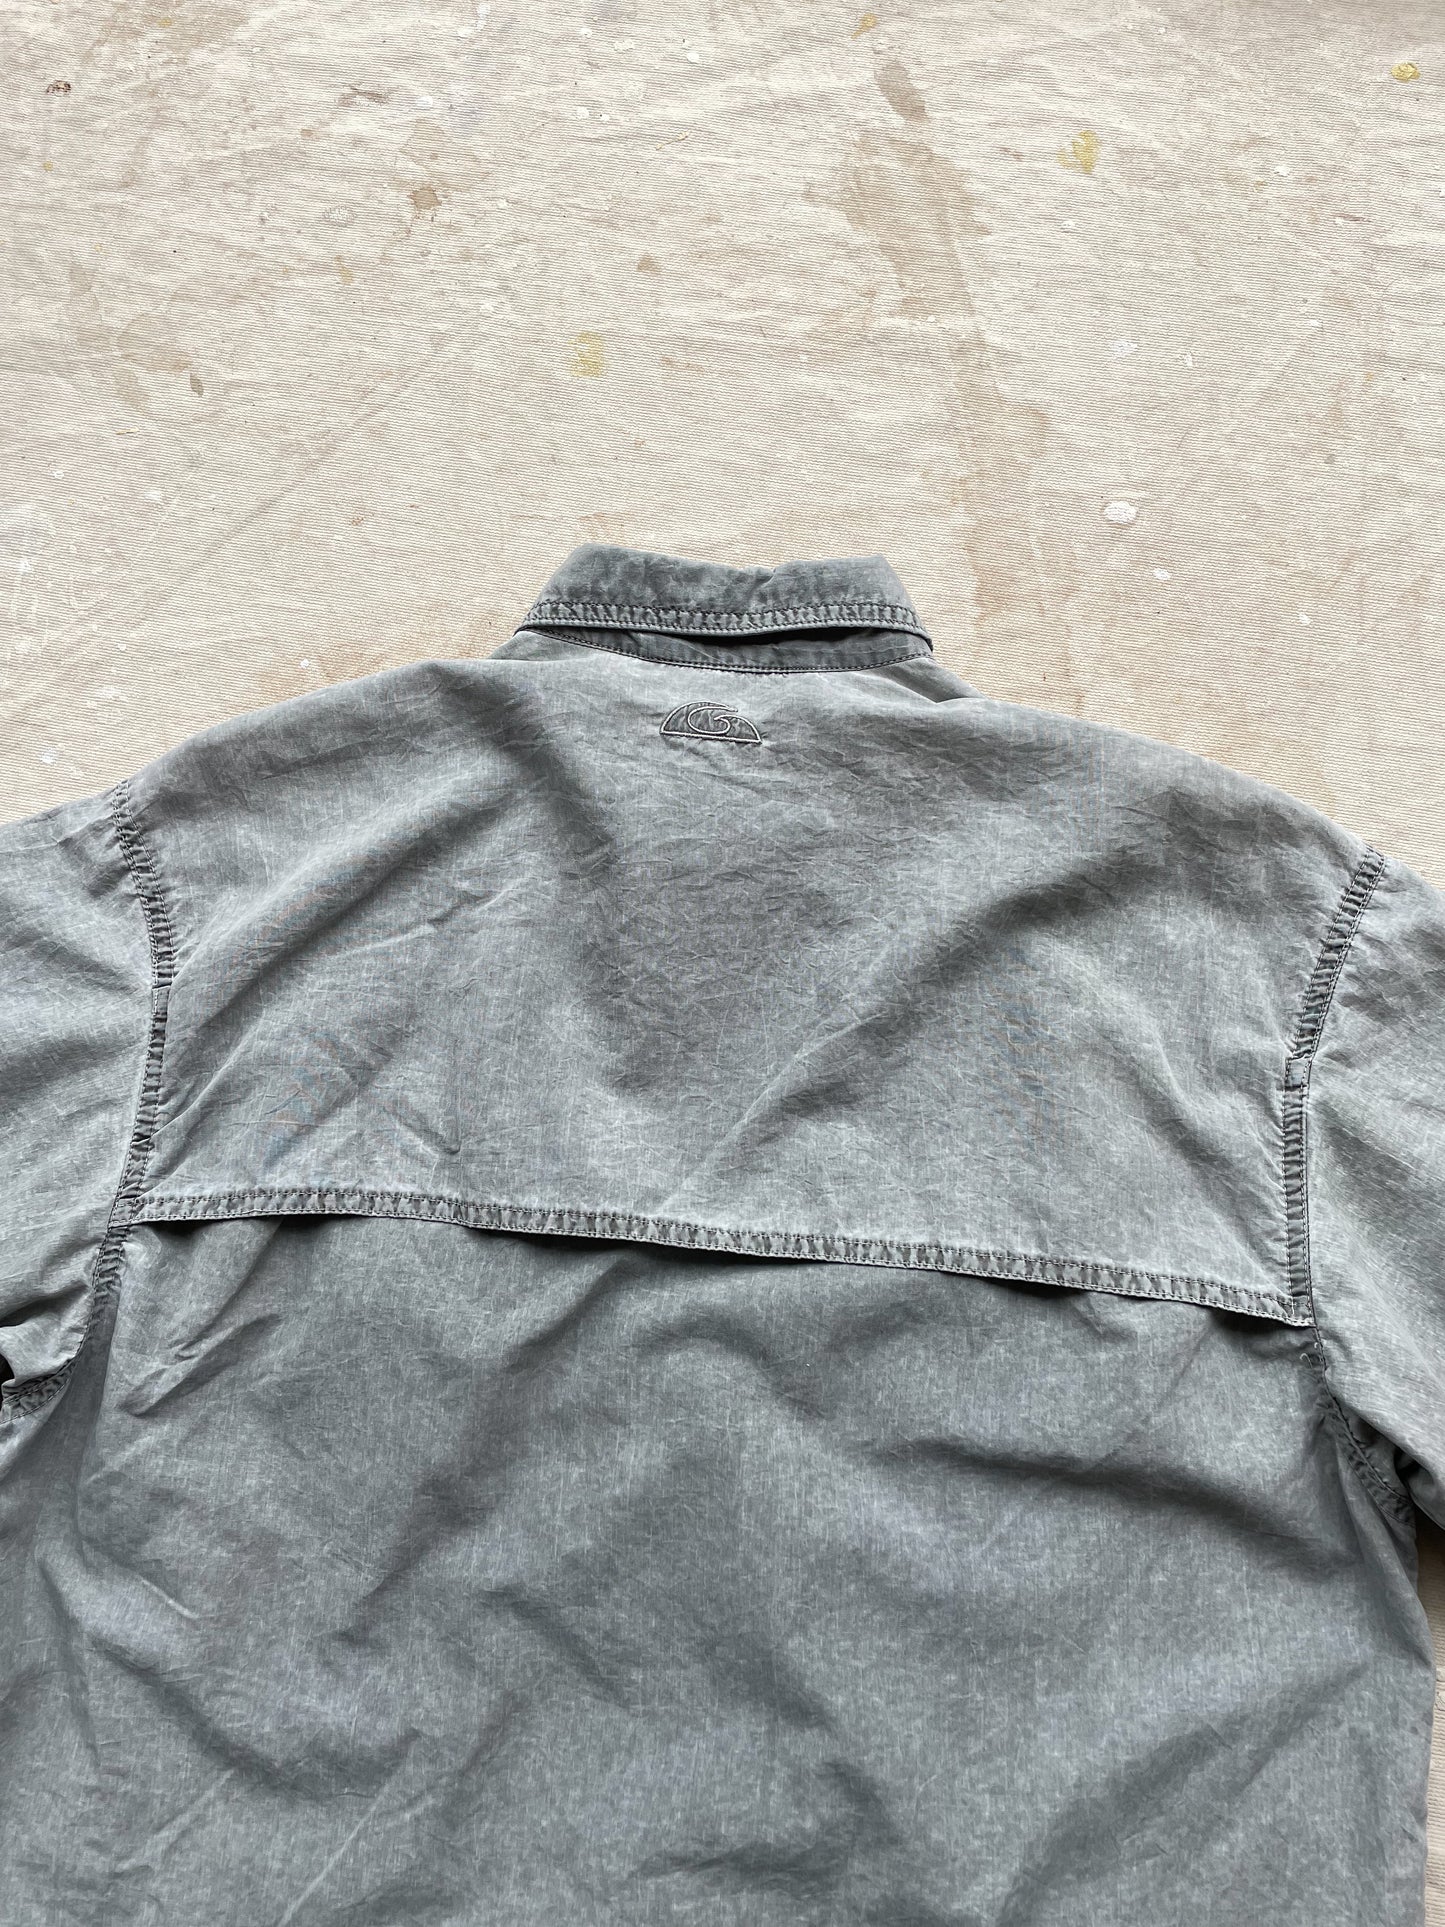 Gramicci Button Up Short Sleeve Shirt—[M]